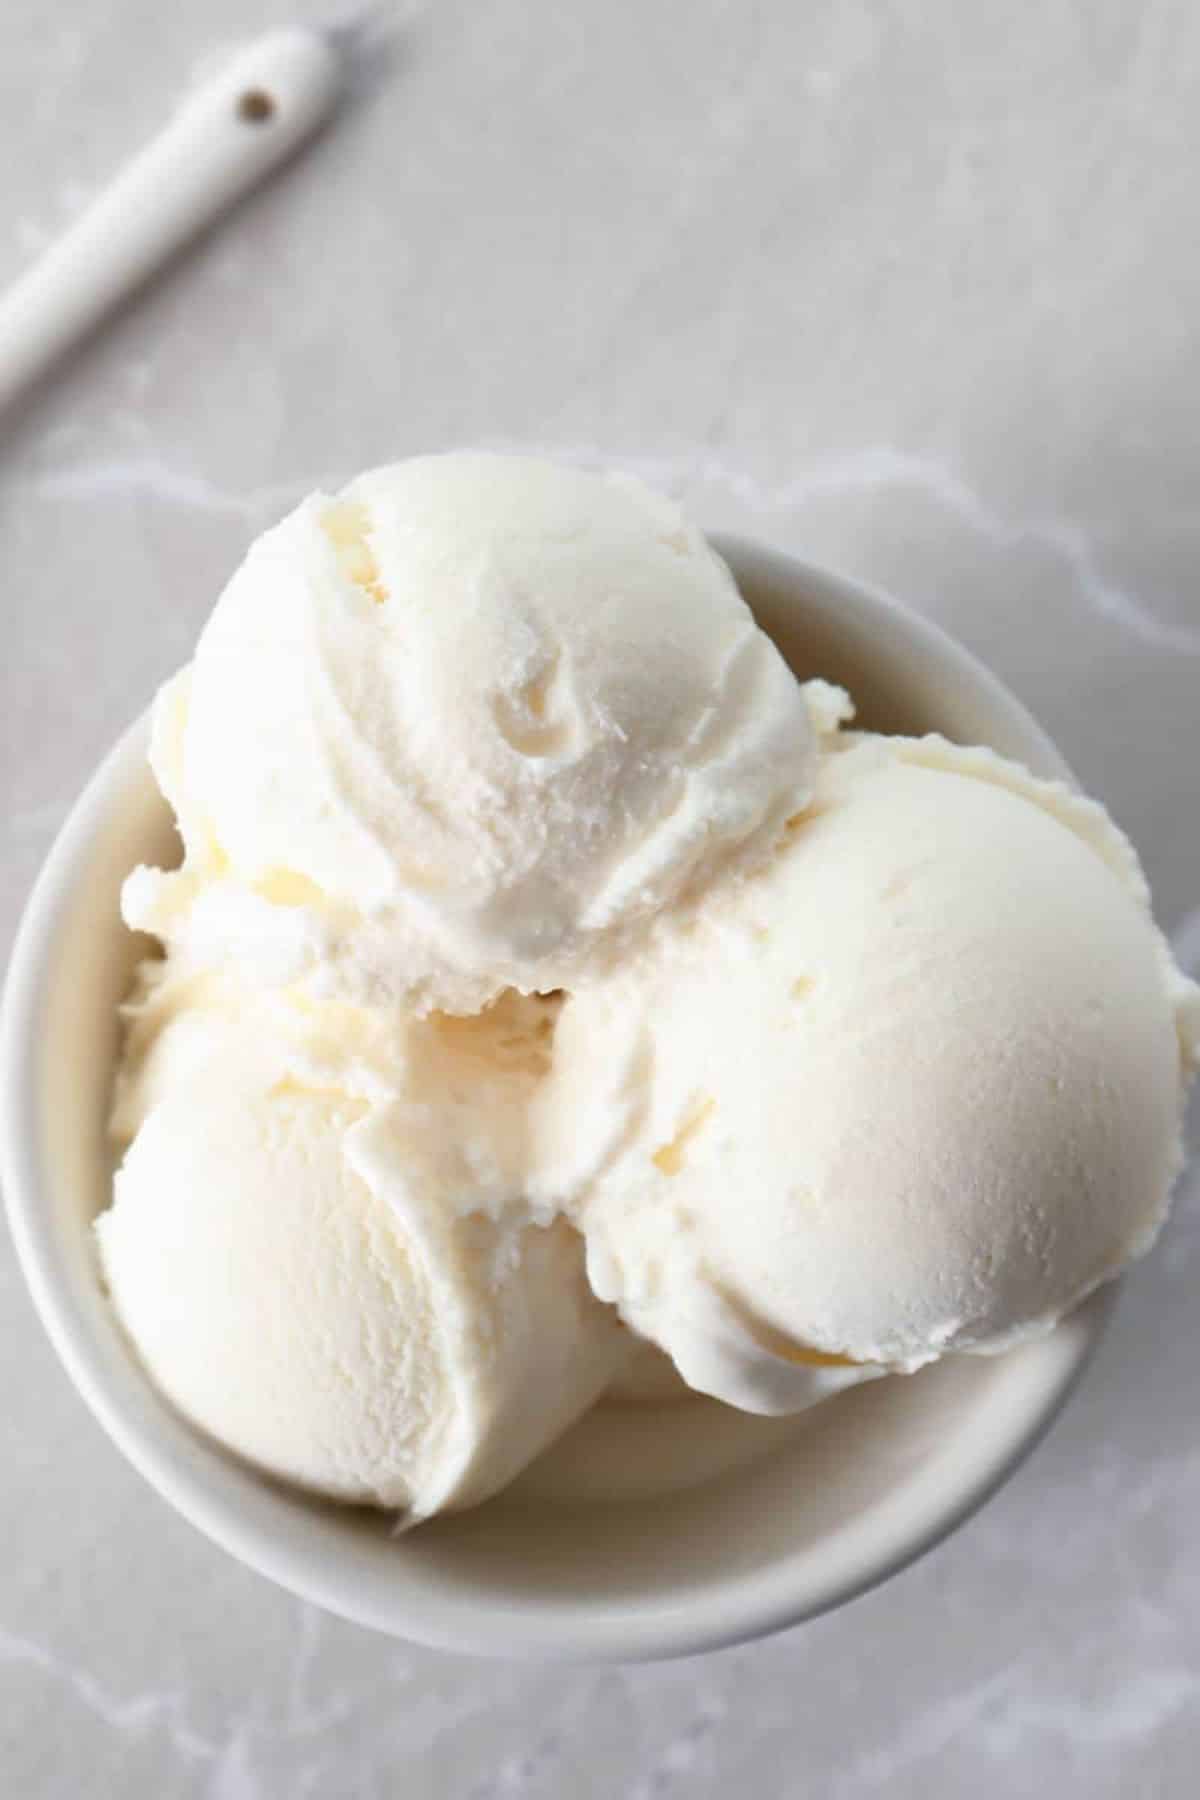 Sugar-Free Ice Cream in a white bowl.